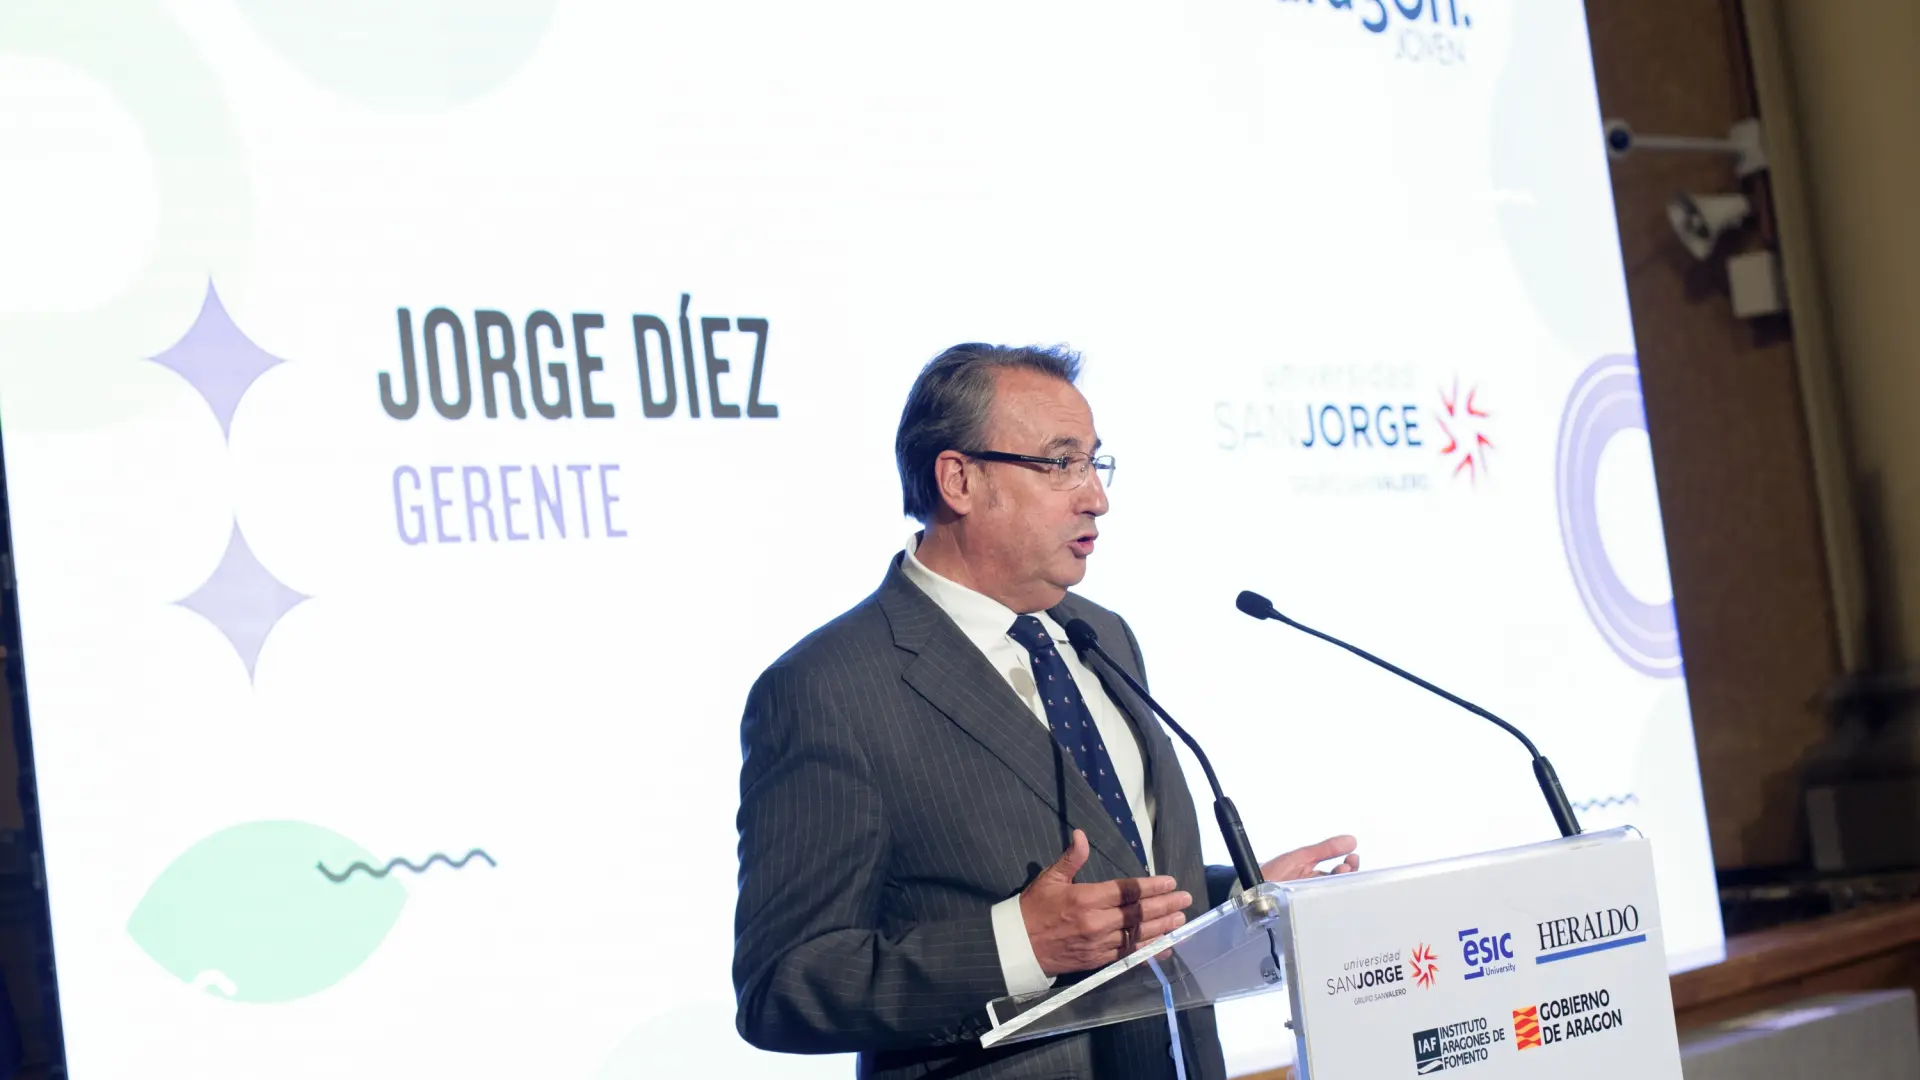 Jorge Díez, gerente de la Universidad San Jorge, dando su discurso.